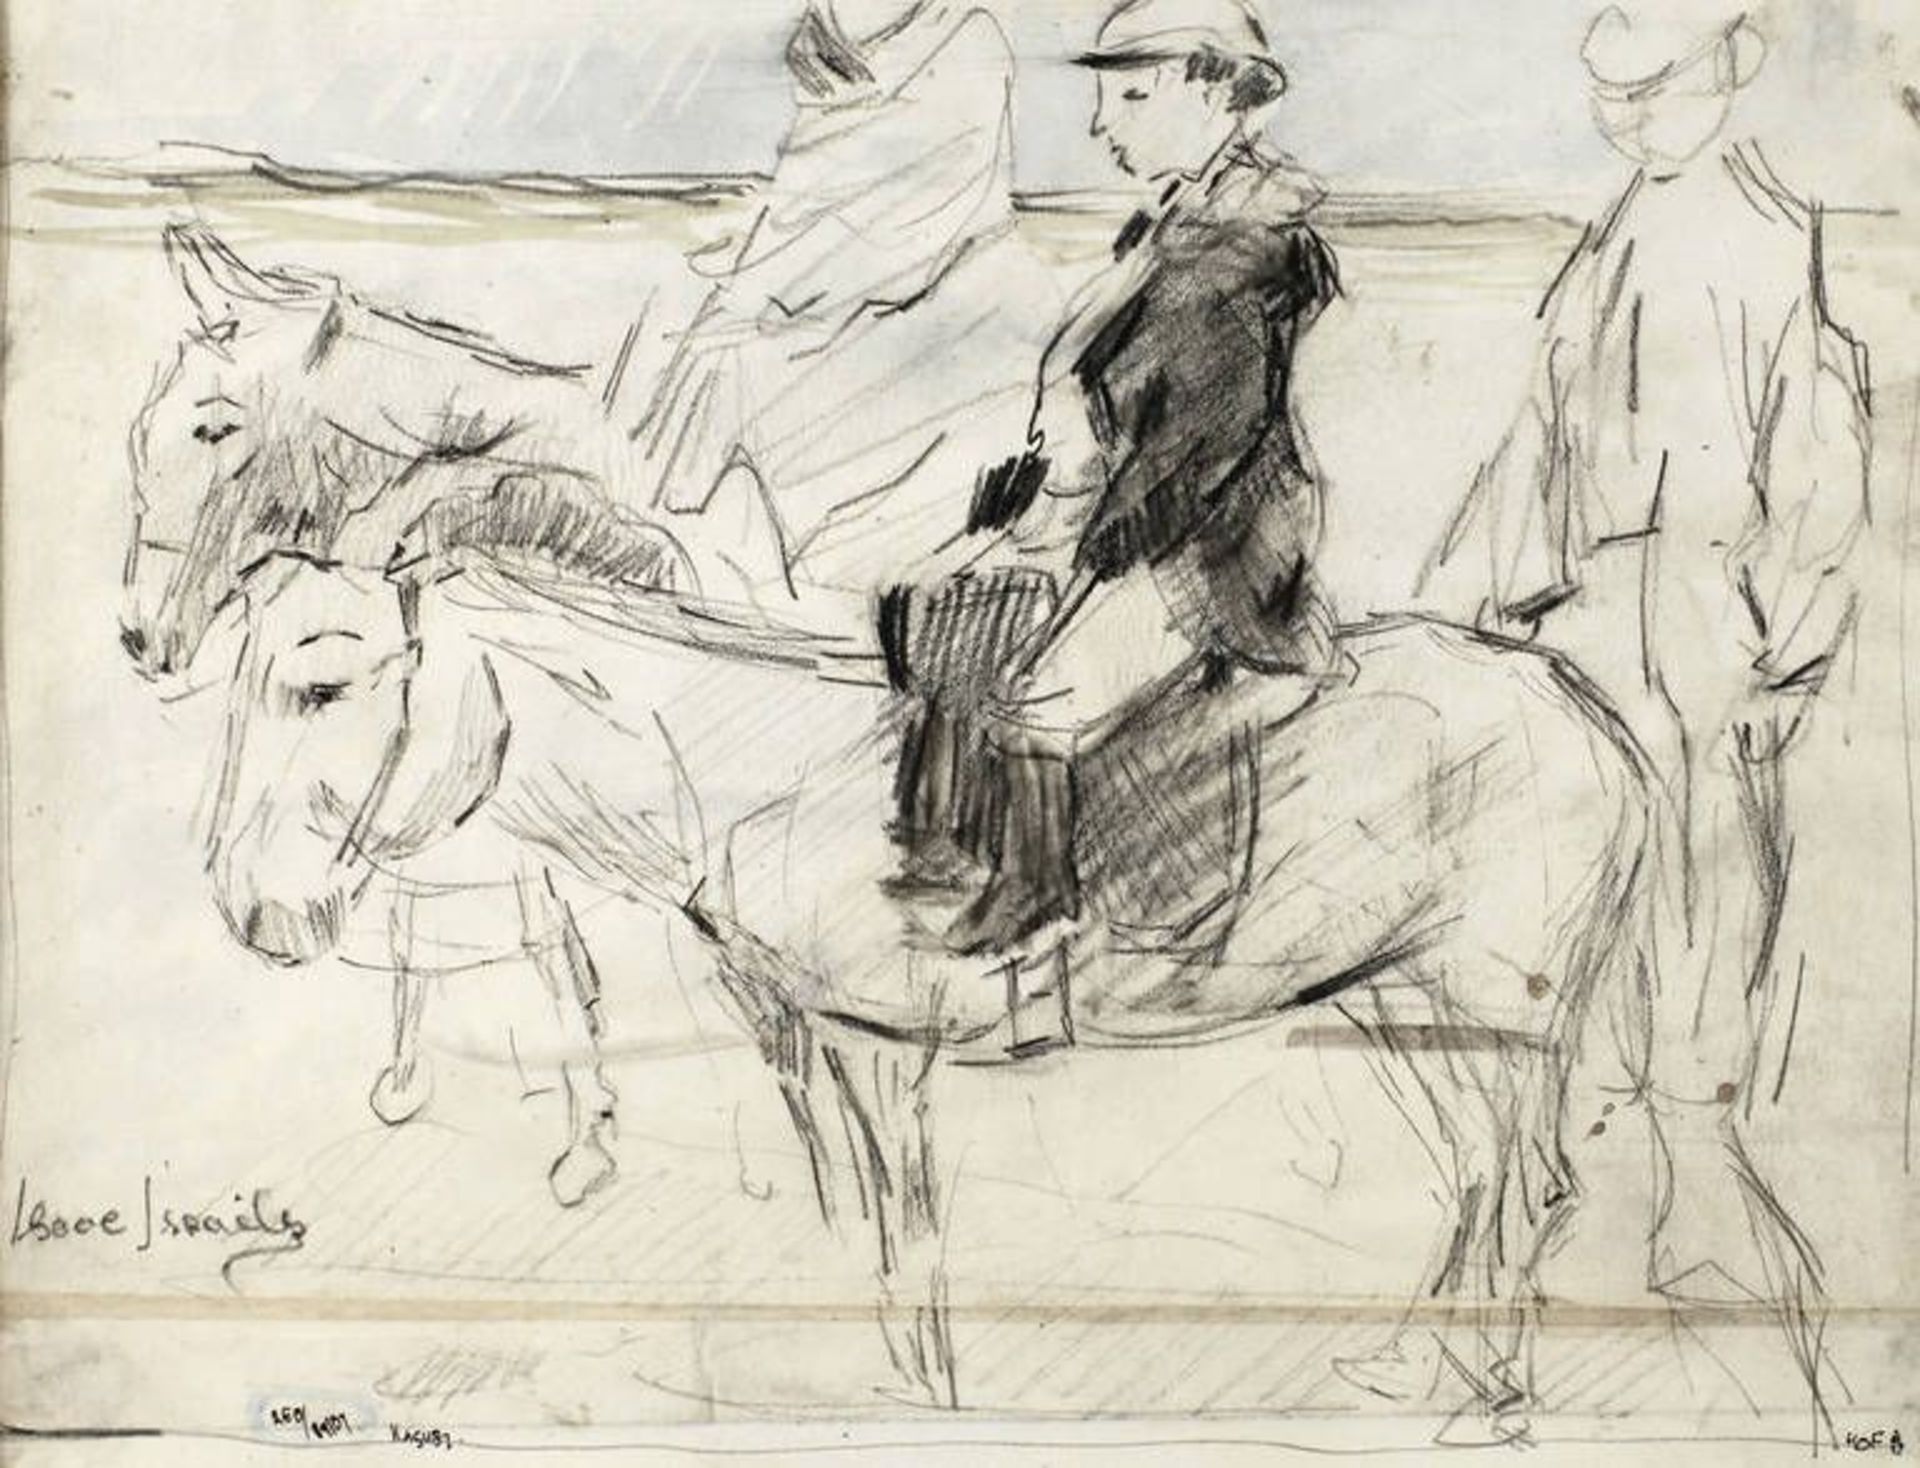 Isaac Israels, "Eselreiter am Strand"  flott erfasste Gedankenskizze mit Figuren auf Eseln und